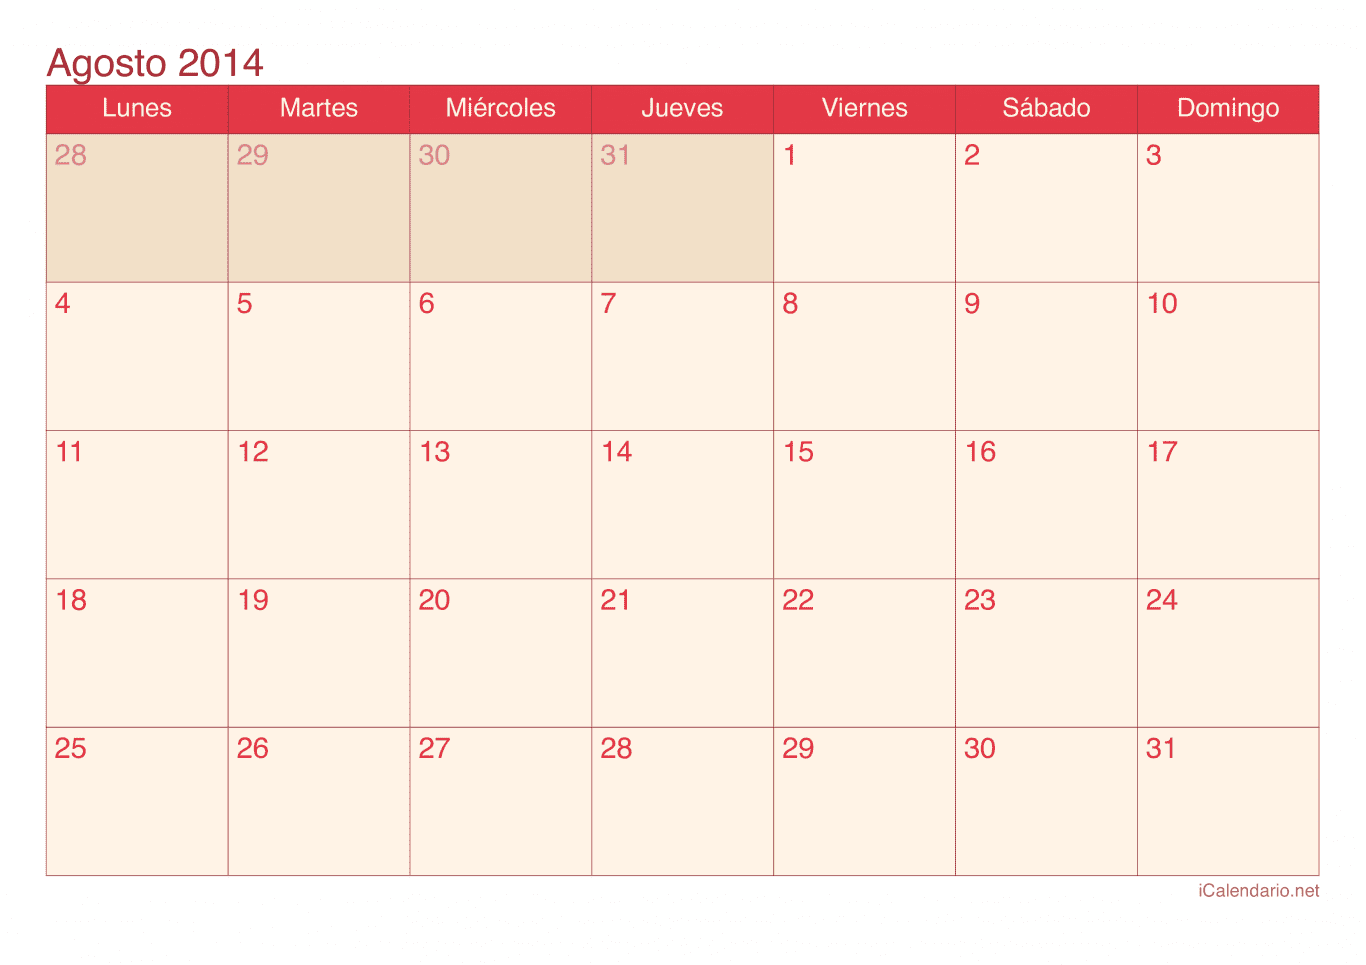 Calendario de agosto 2014 - Cherry